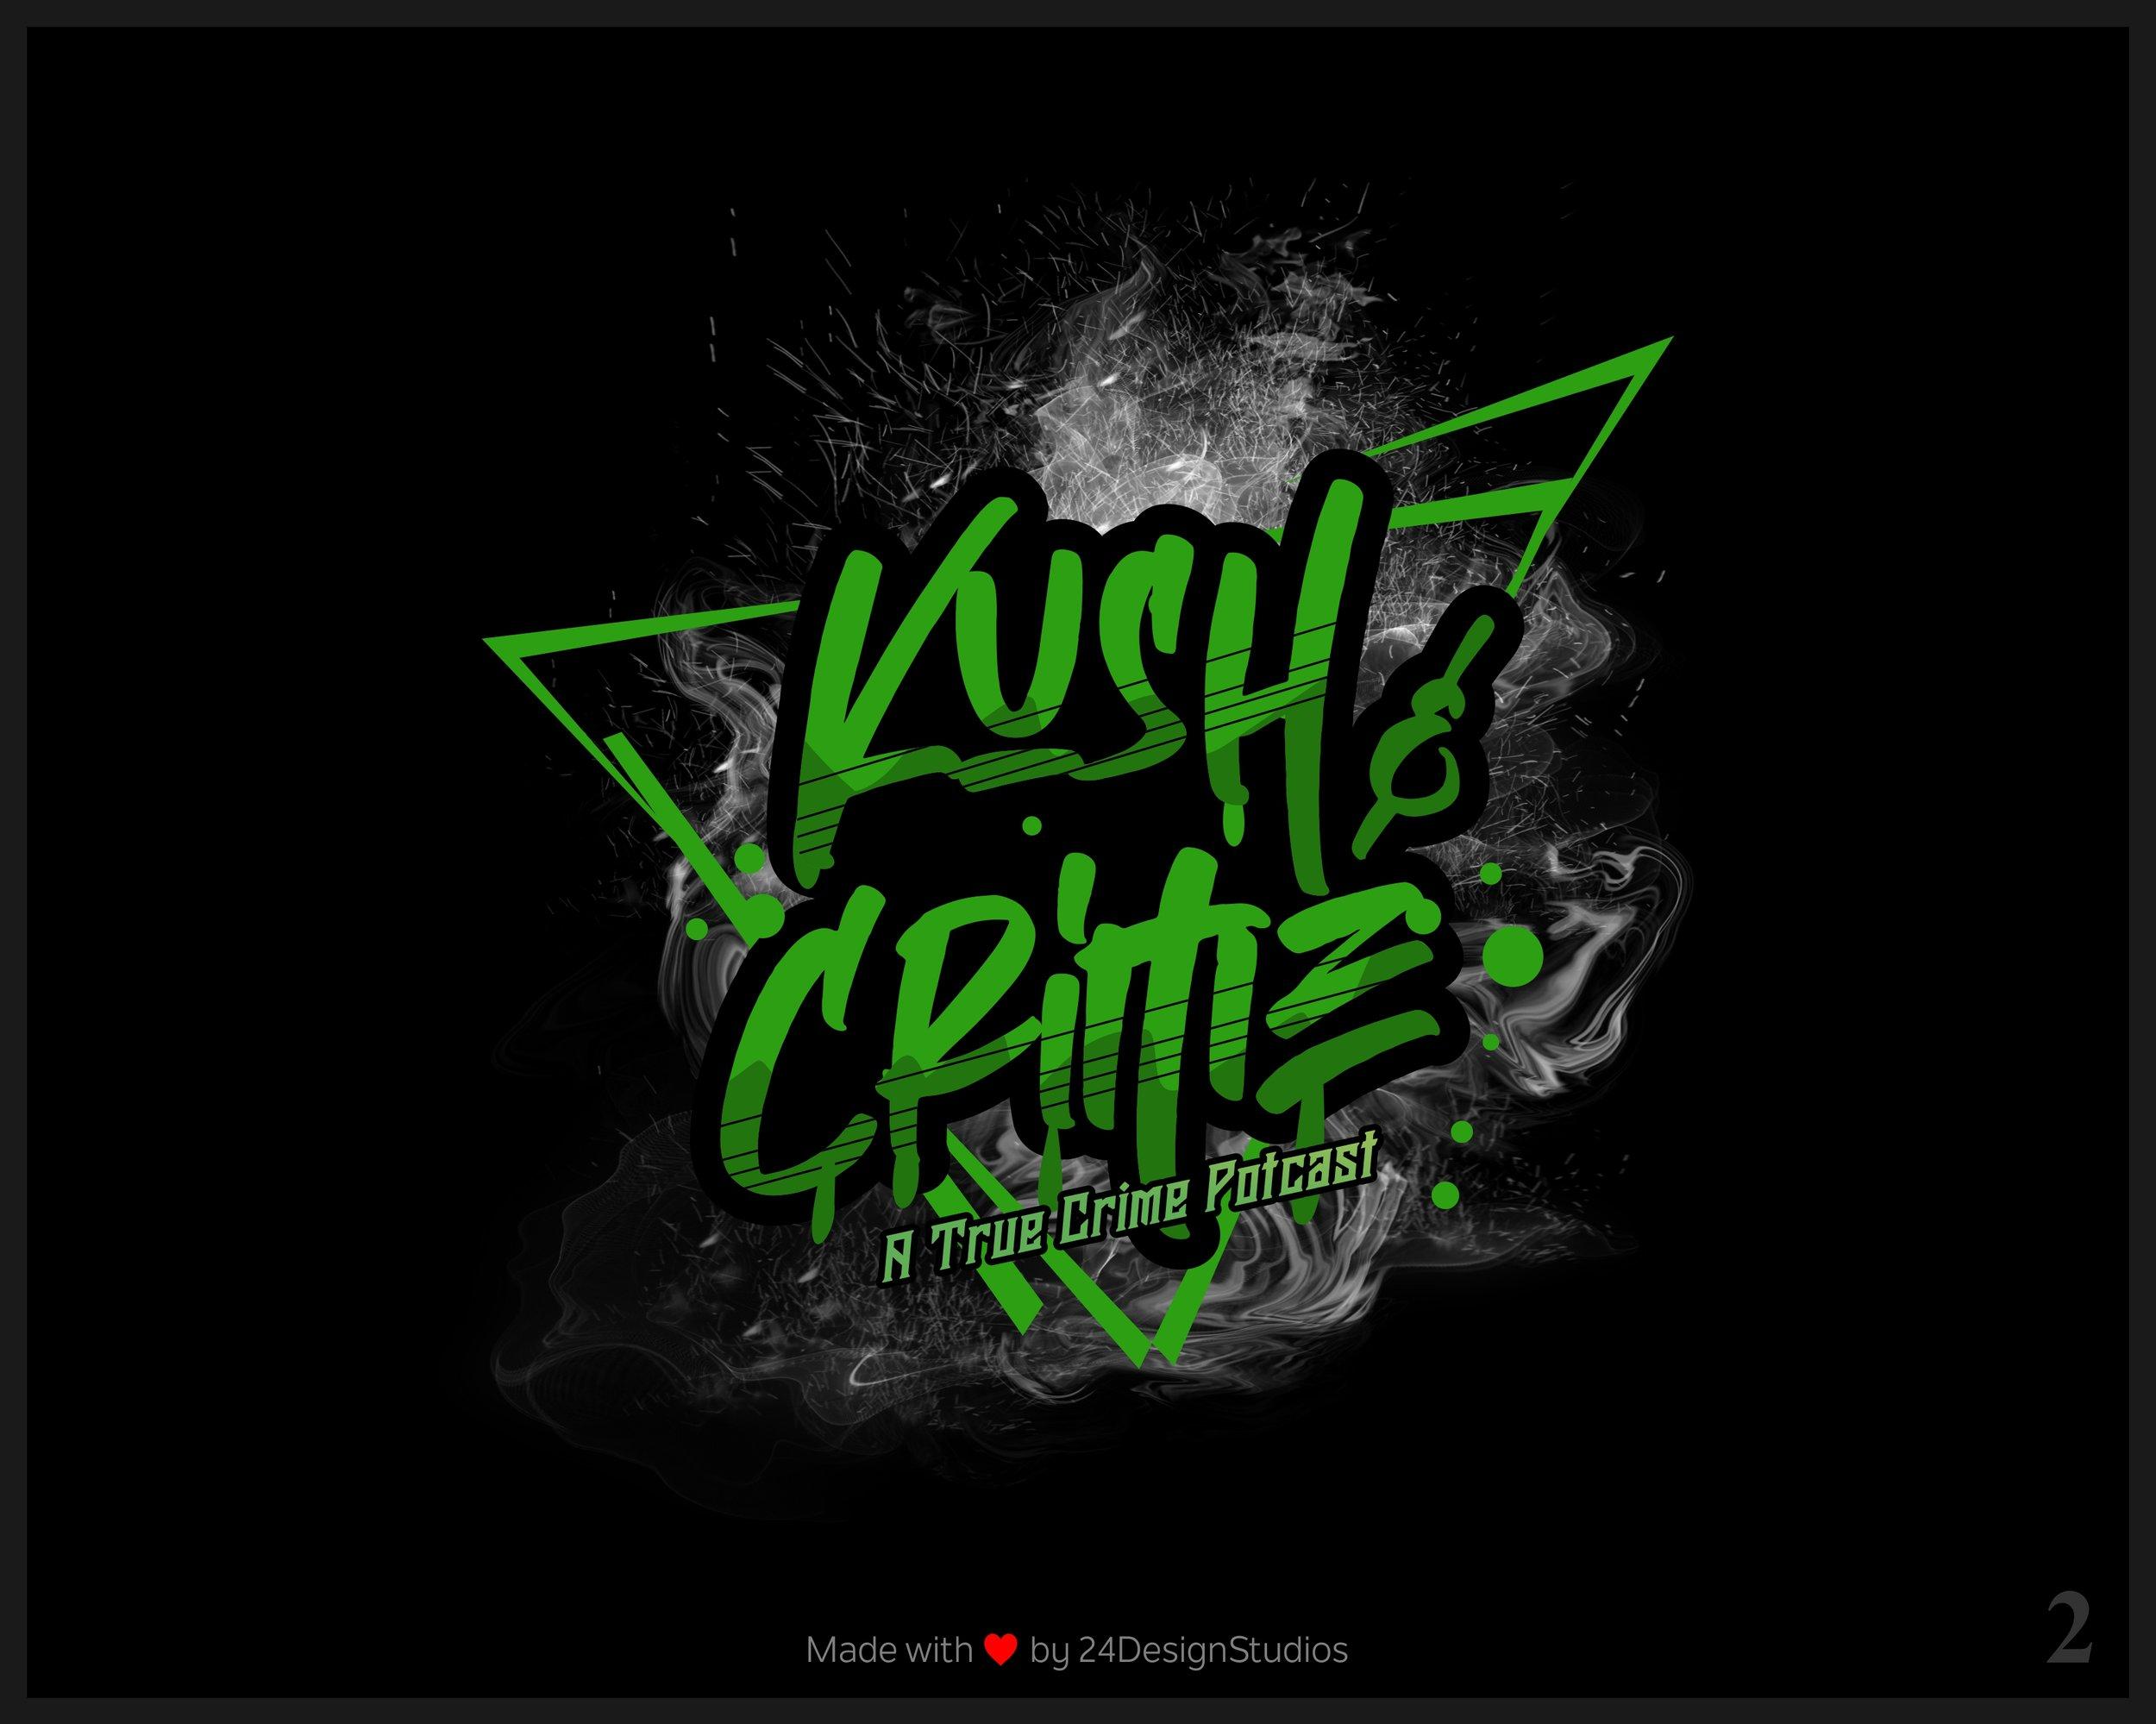 Kush Crime A True Crume Potcast Episodes